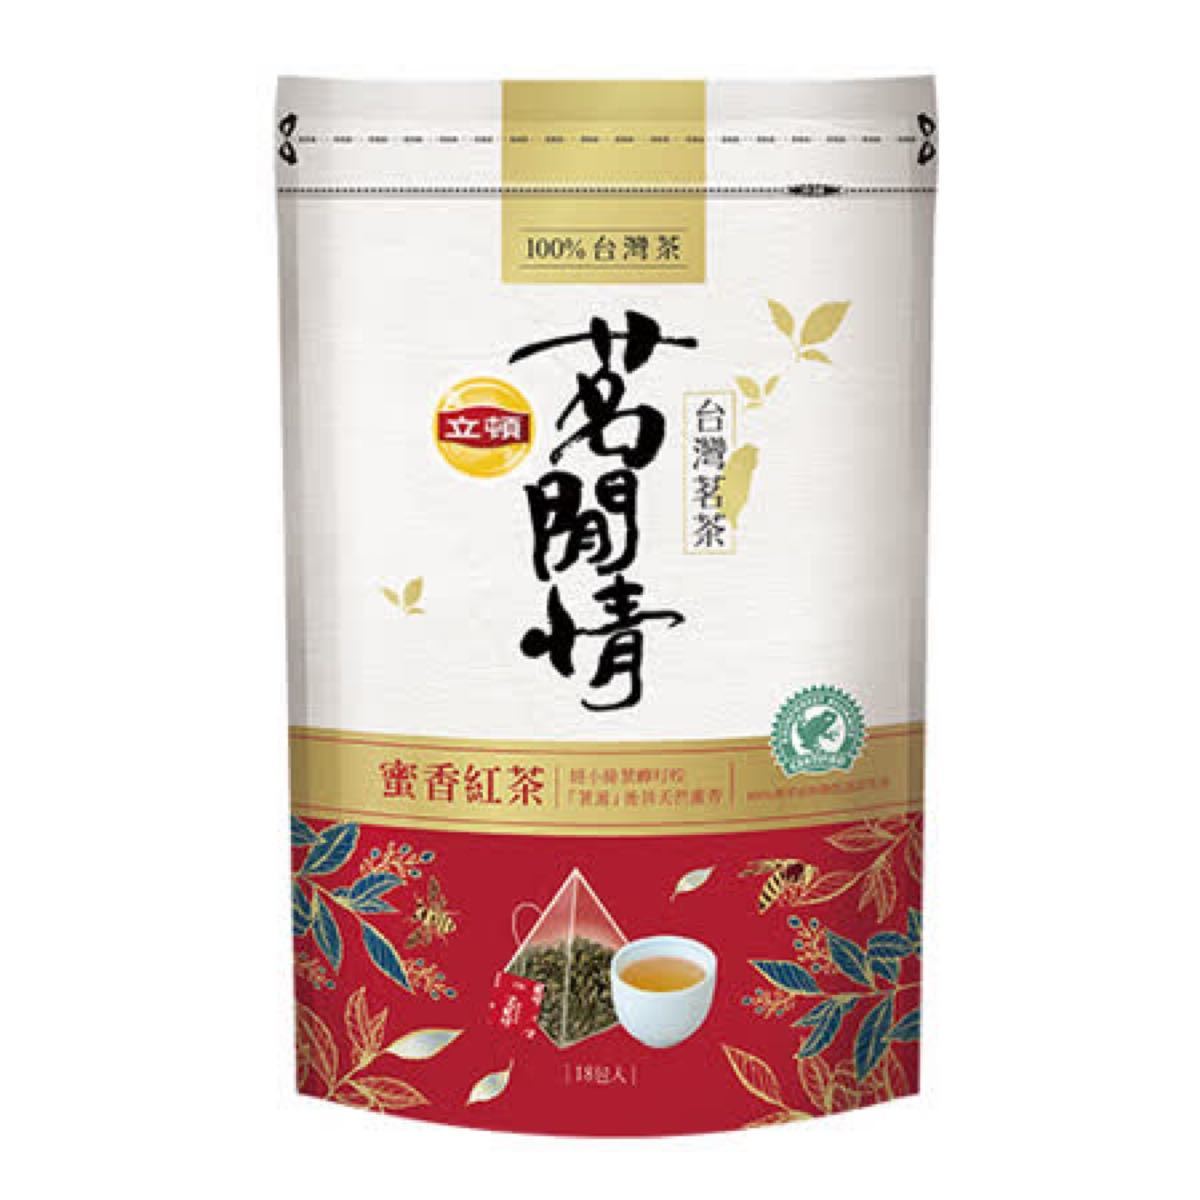 立頓 リプトン 蜜香紅茶 18袋入　100%台湾茶